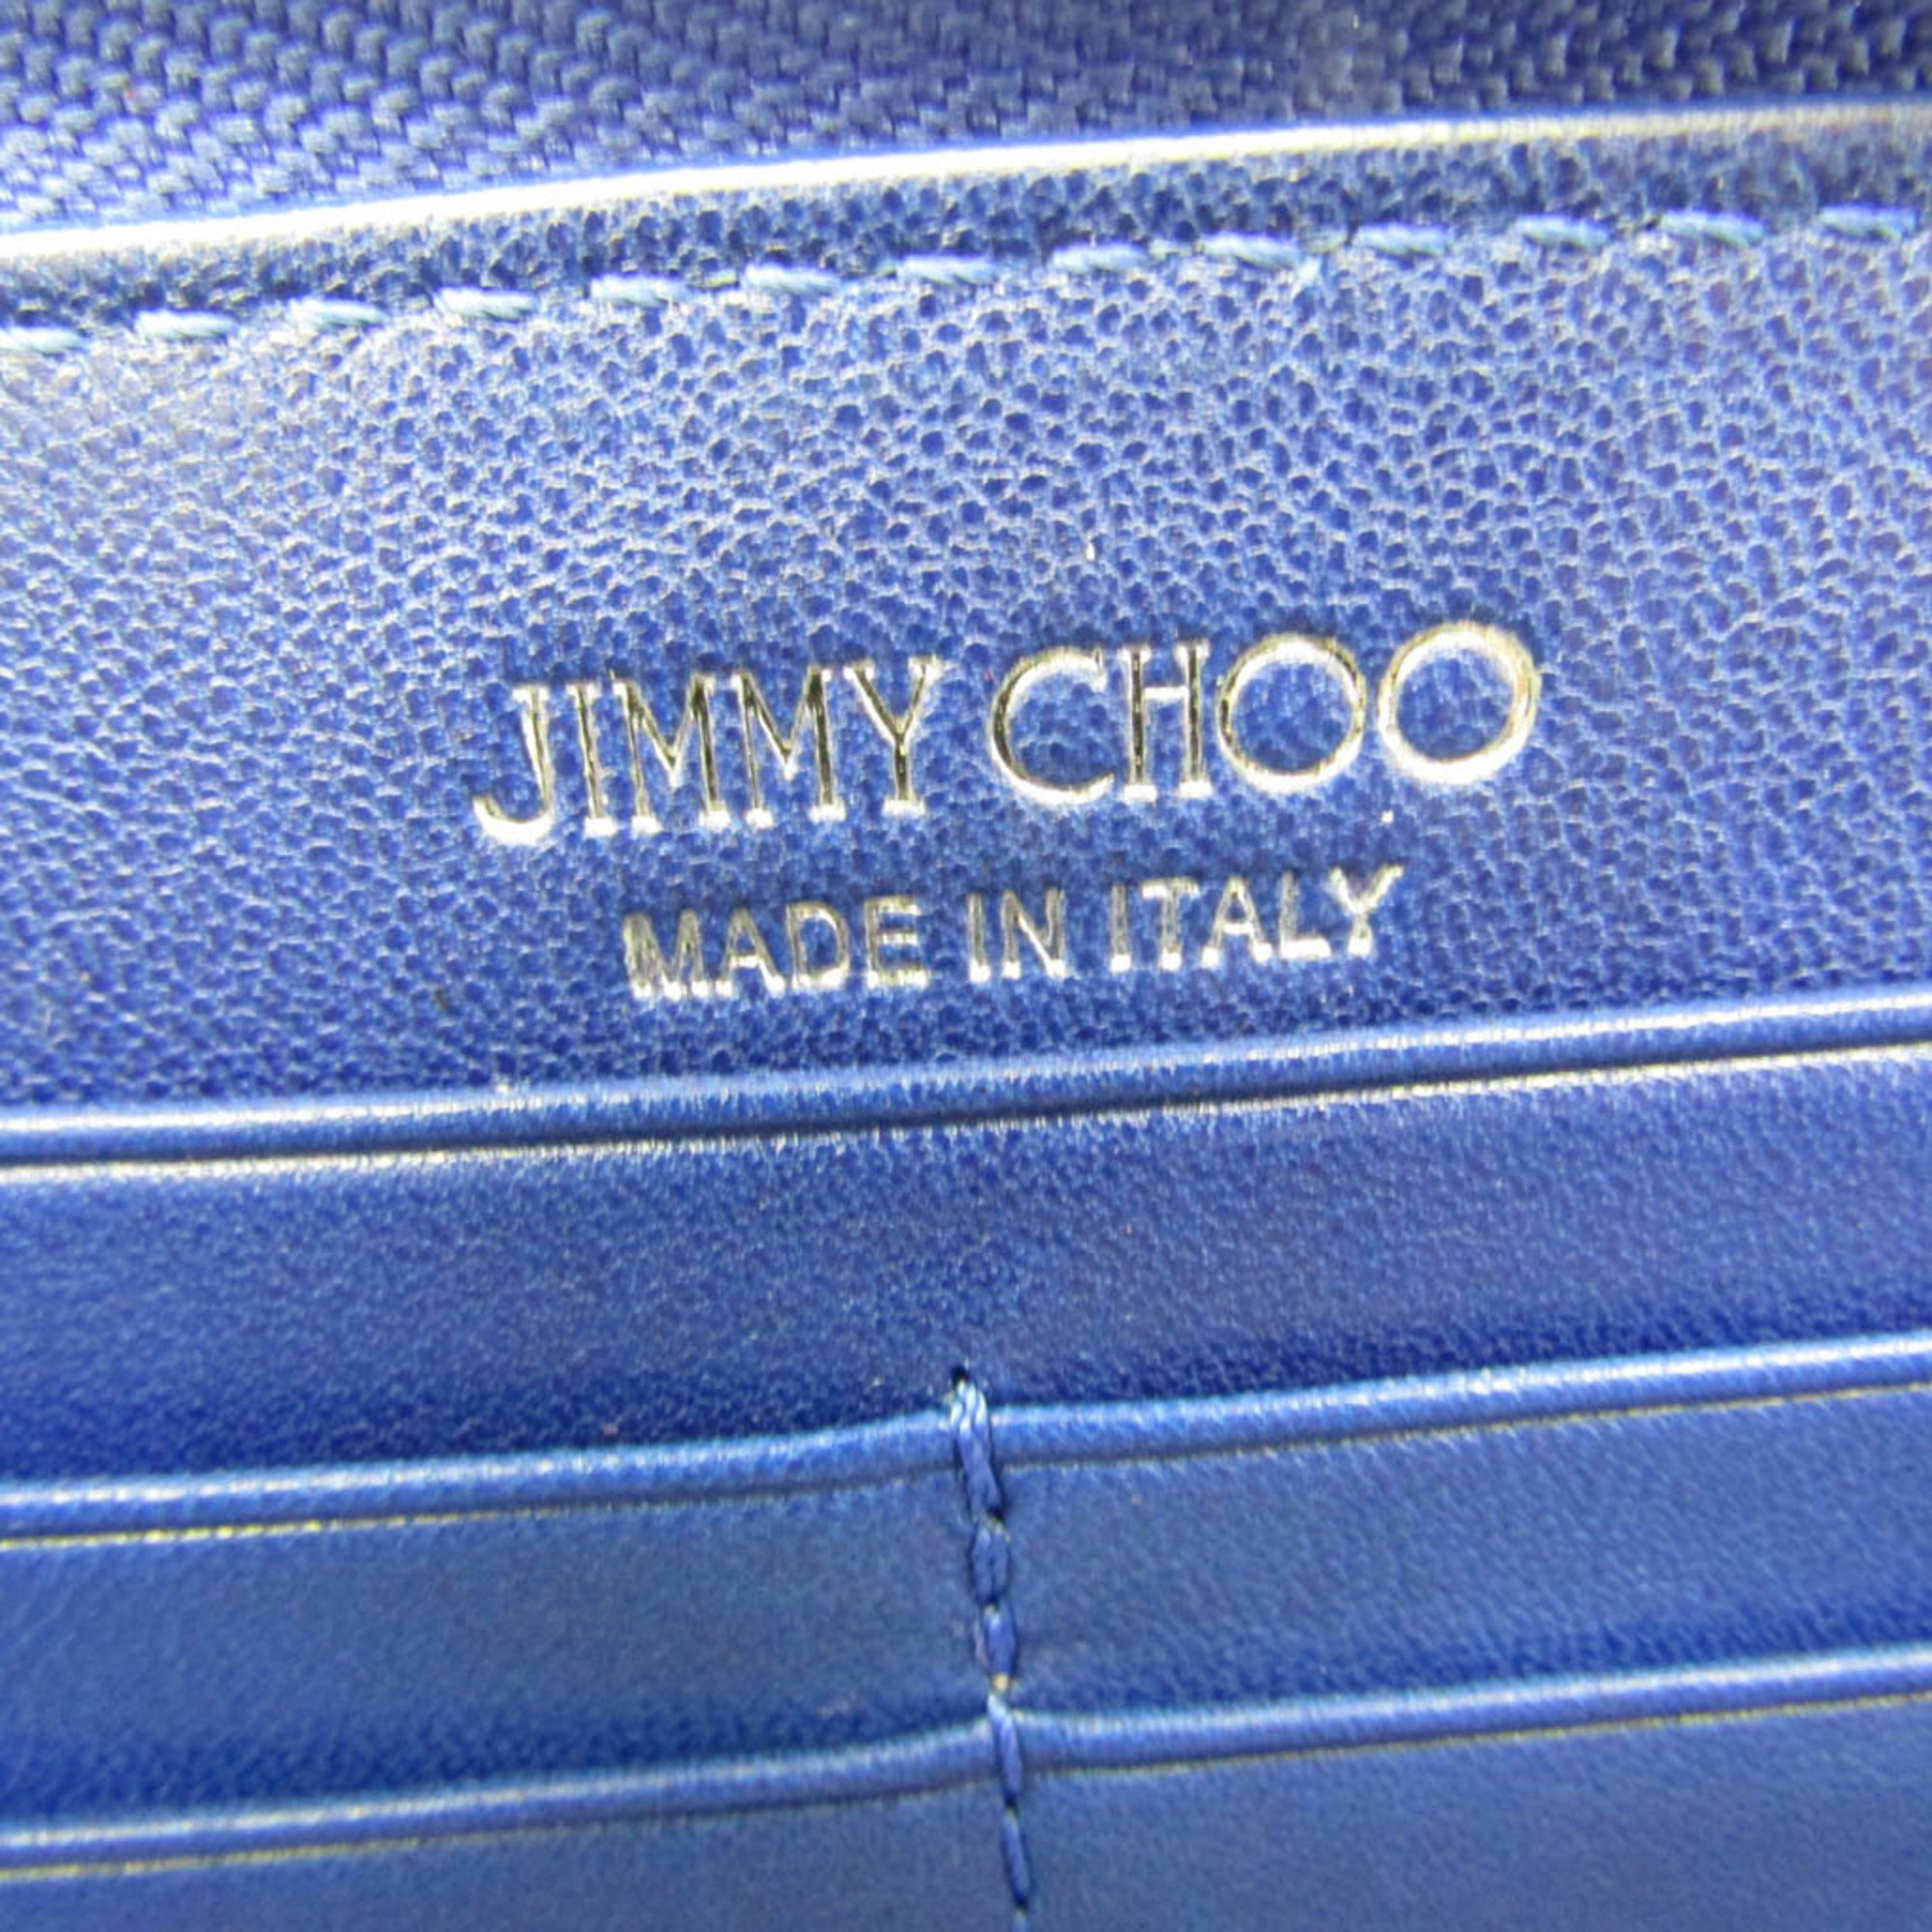 Jimmy Choo Philippa 0C3867 Women's Leather Studded Long Wallet (bi-fold) Blue,Navy